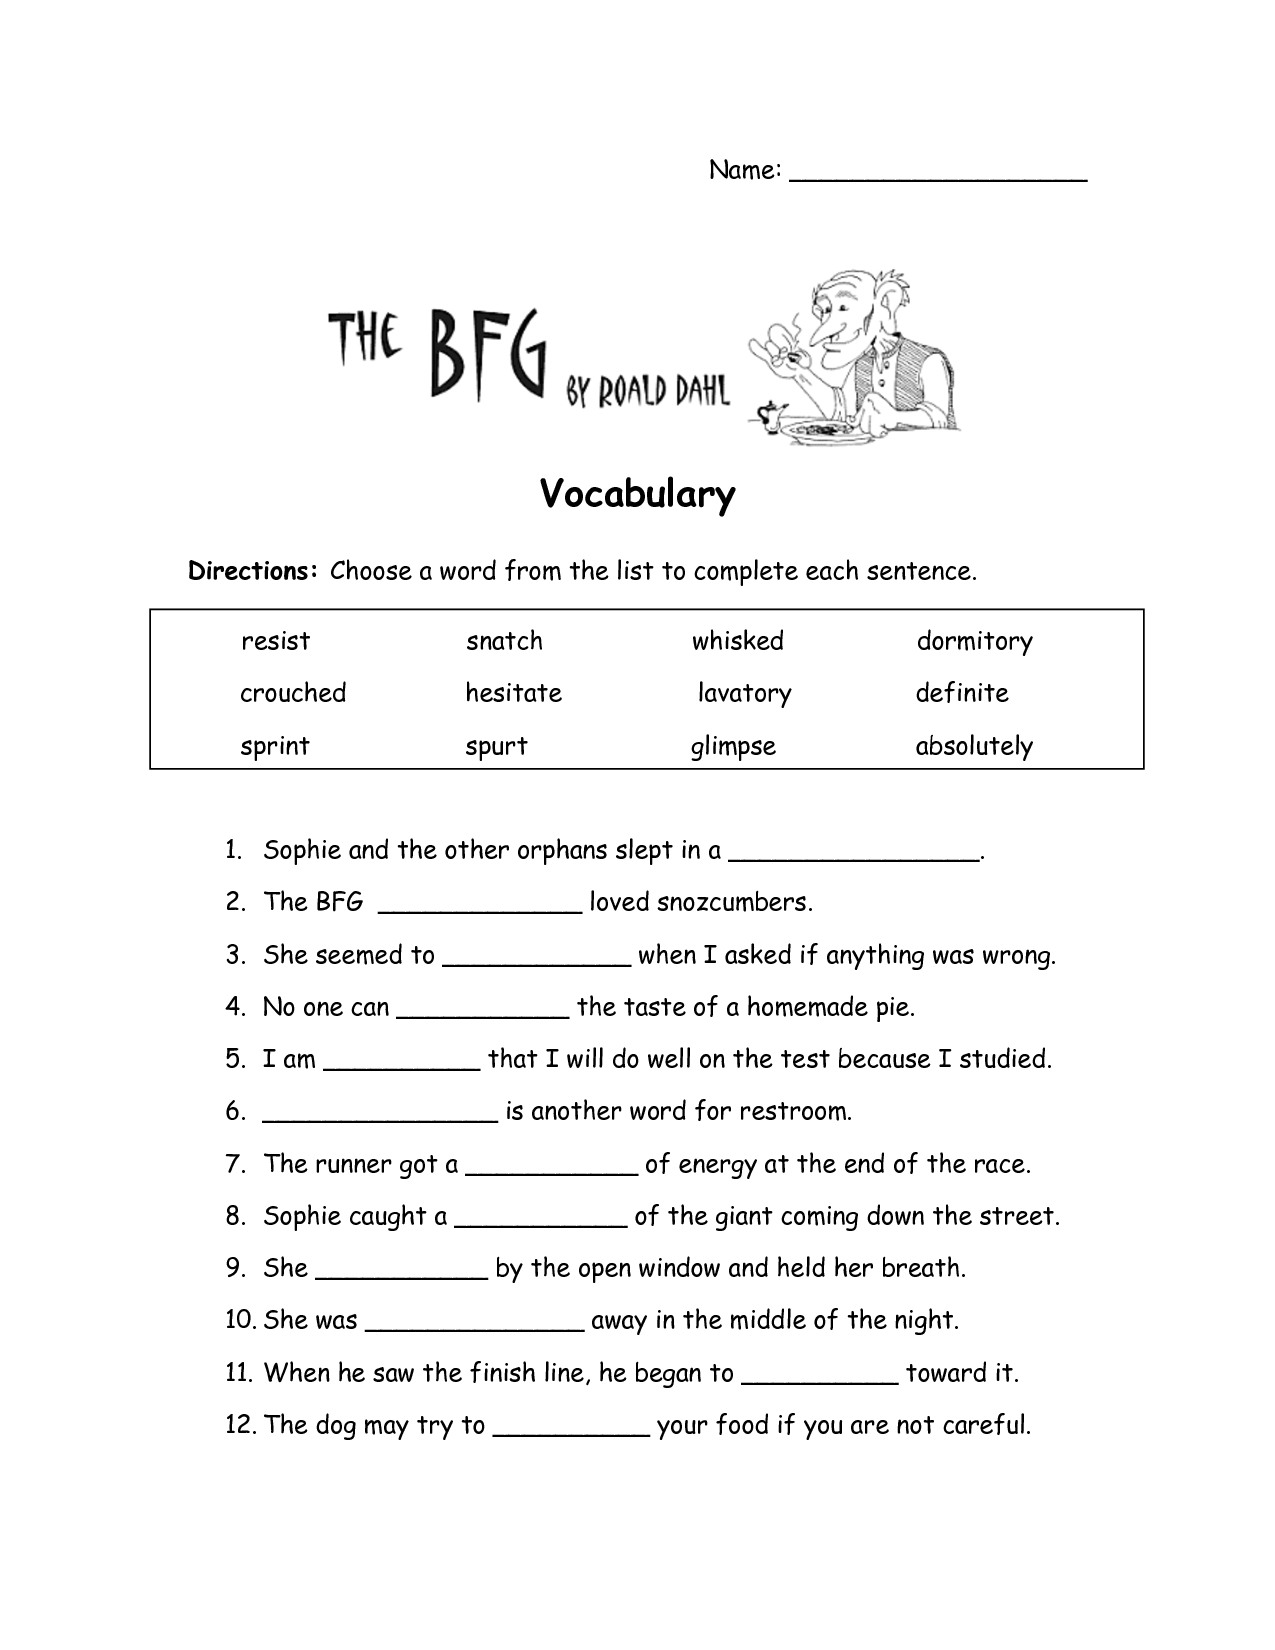 The Bfg Worksheets | The Bfg Vocabulary Worksheet | Education Items | Grade 3 Vocabulary Worksheets Printable